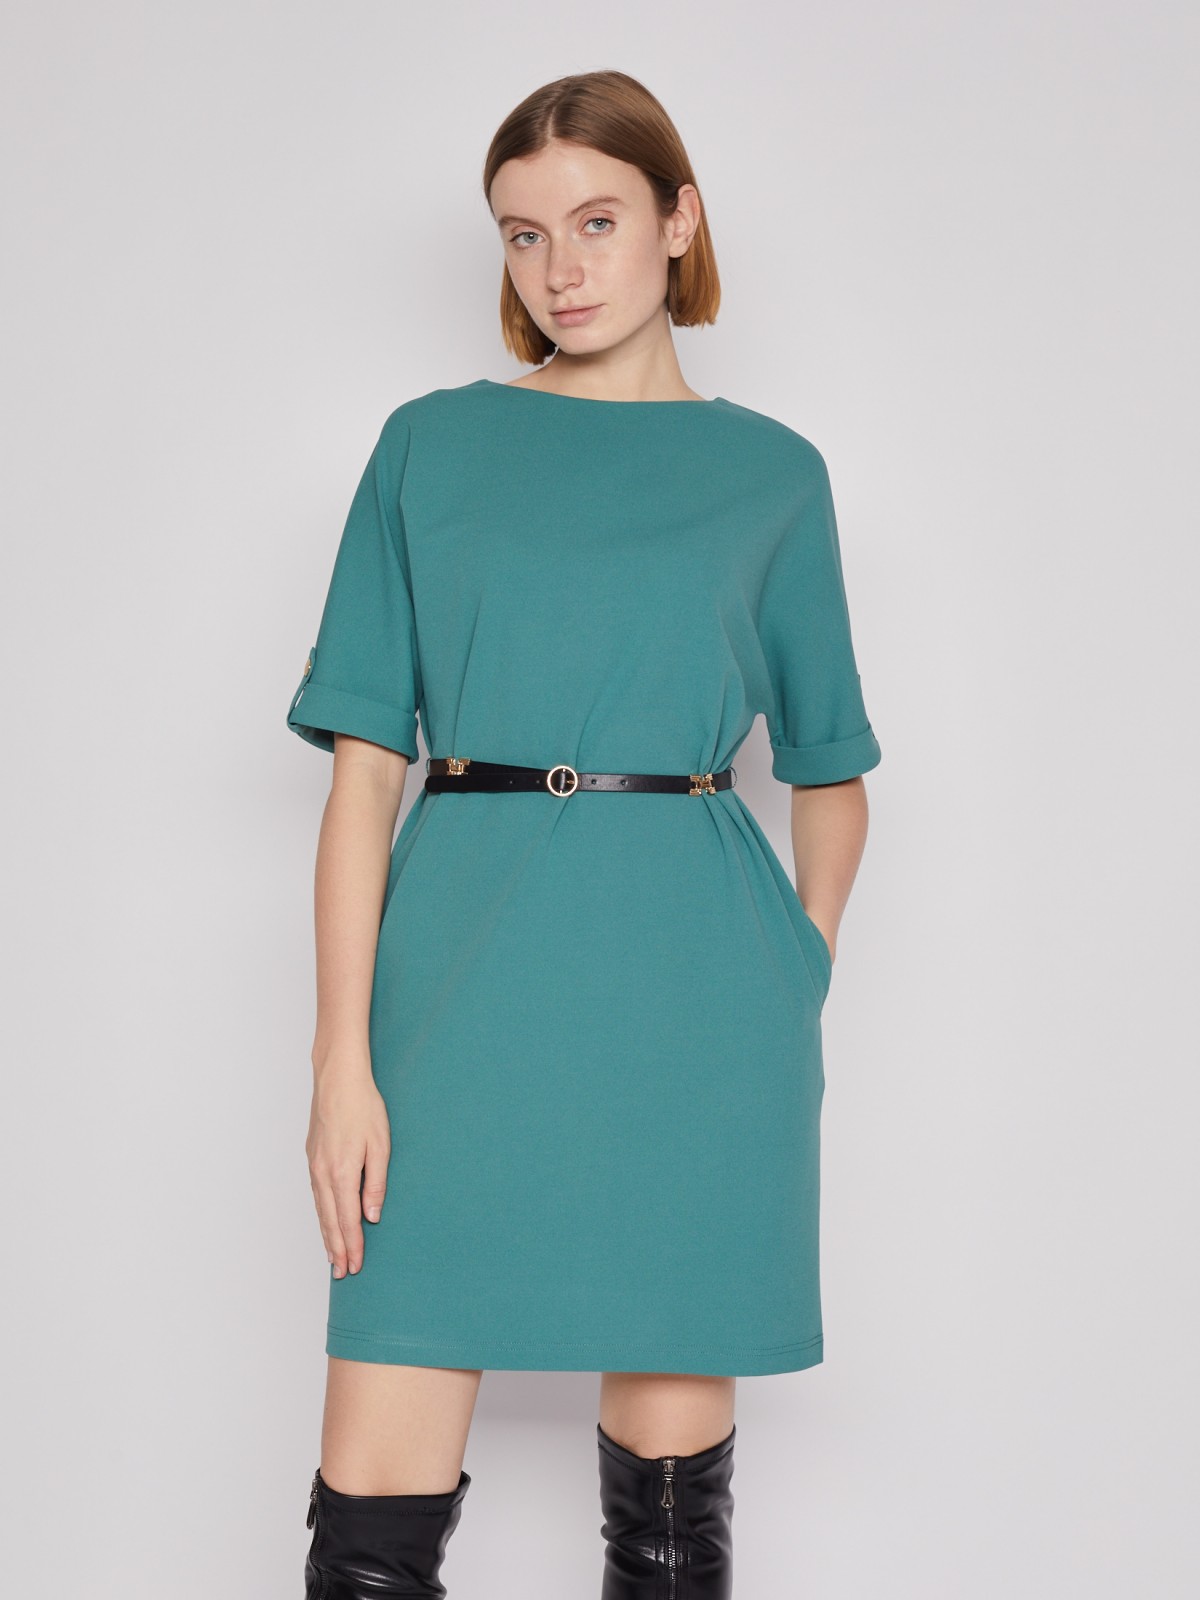 Платье с ремнём zolla 022138135022, цвет зеленый, размер S - фото 3